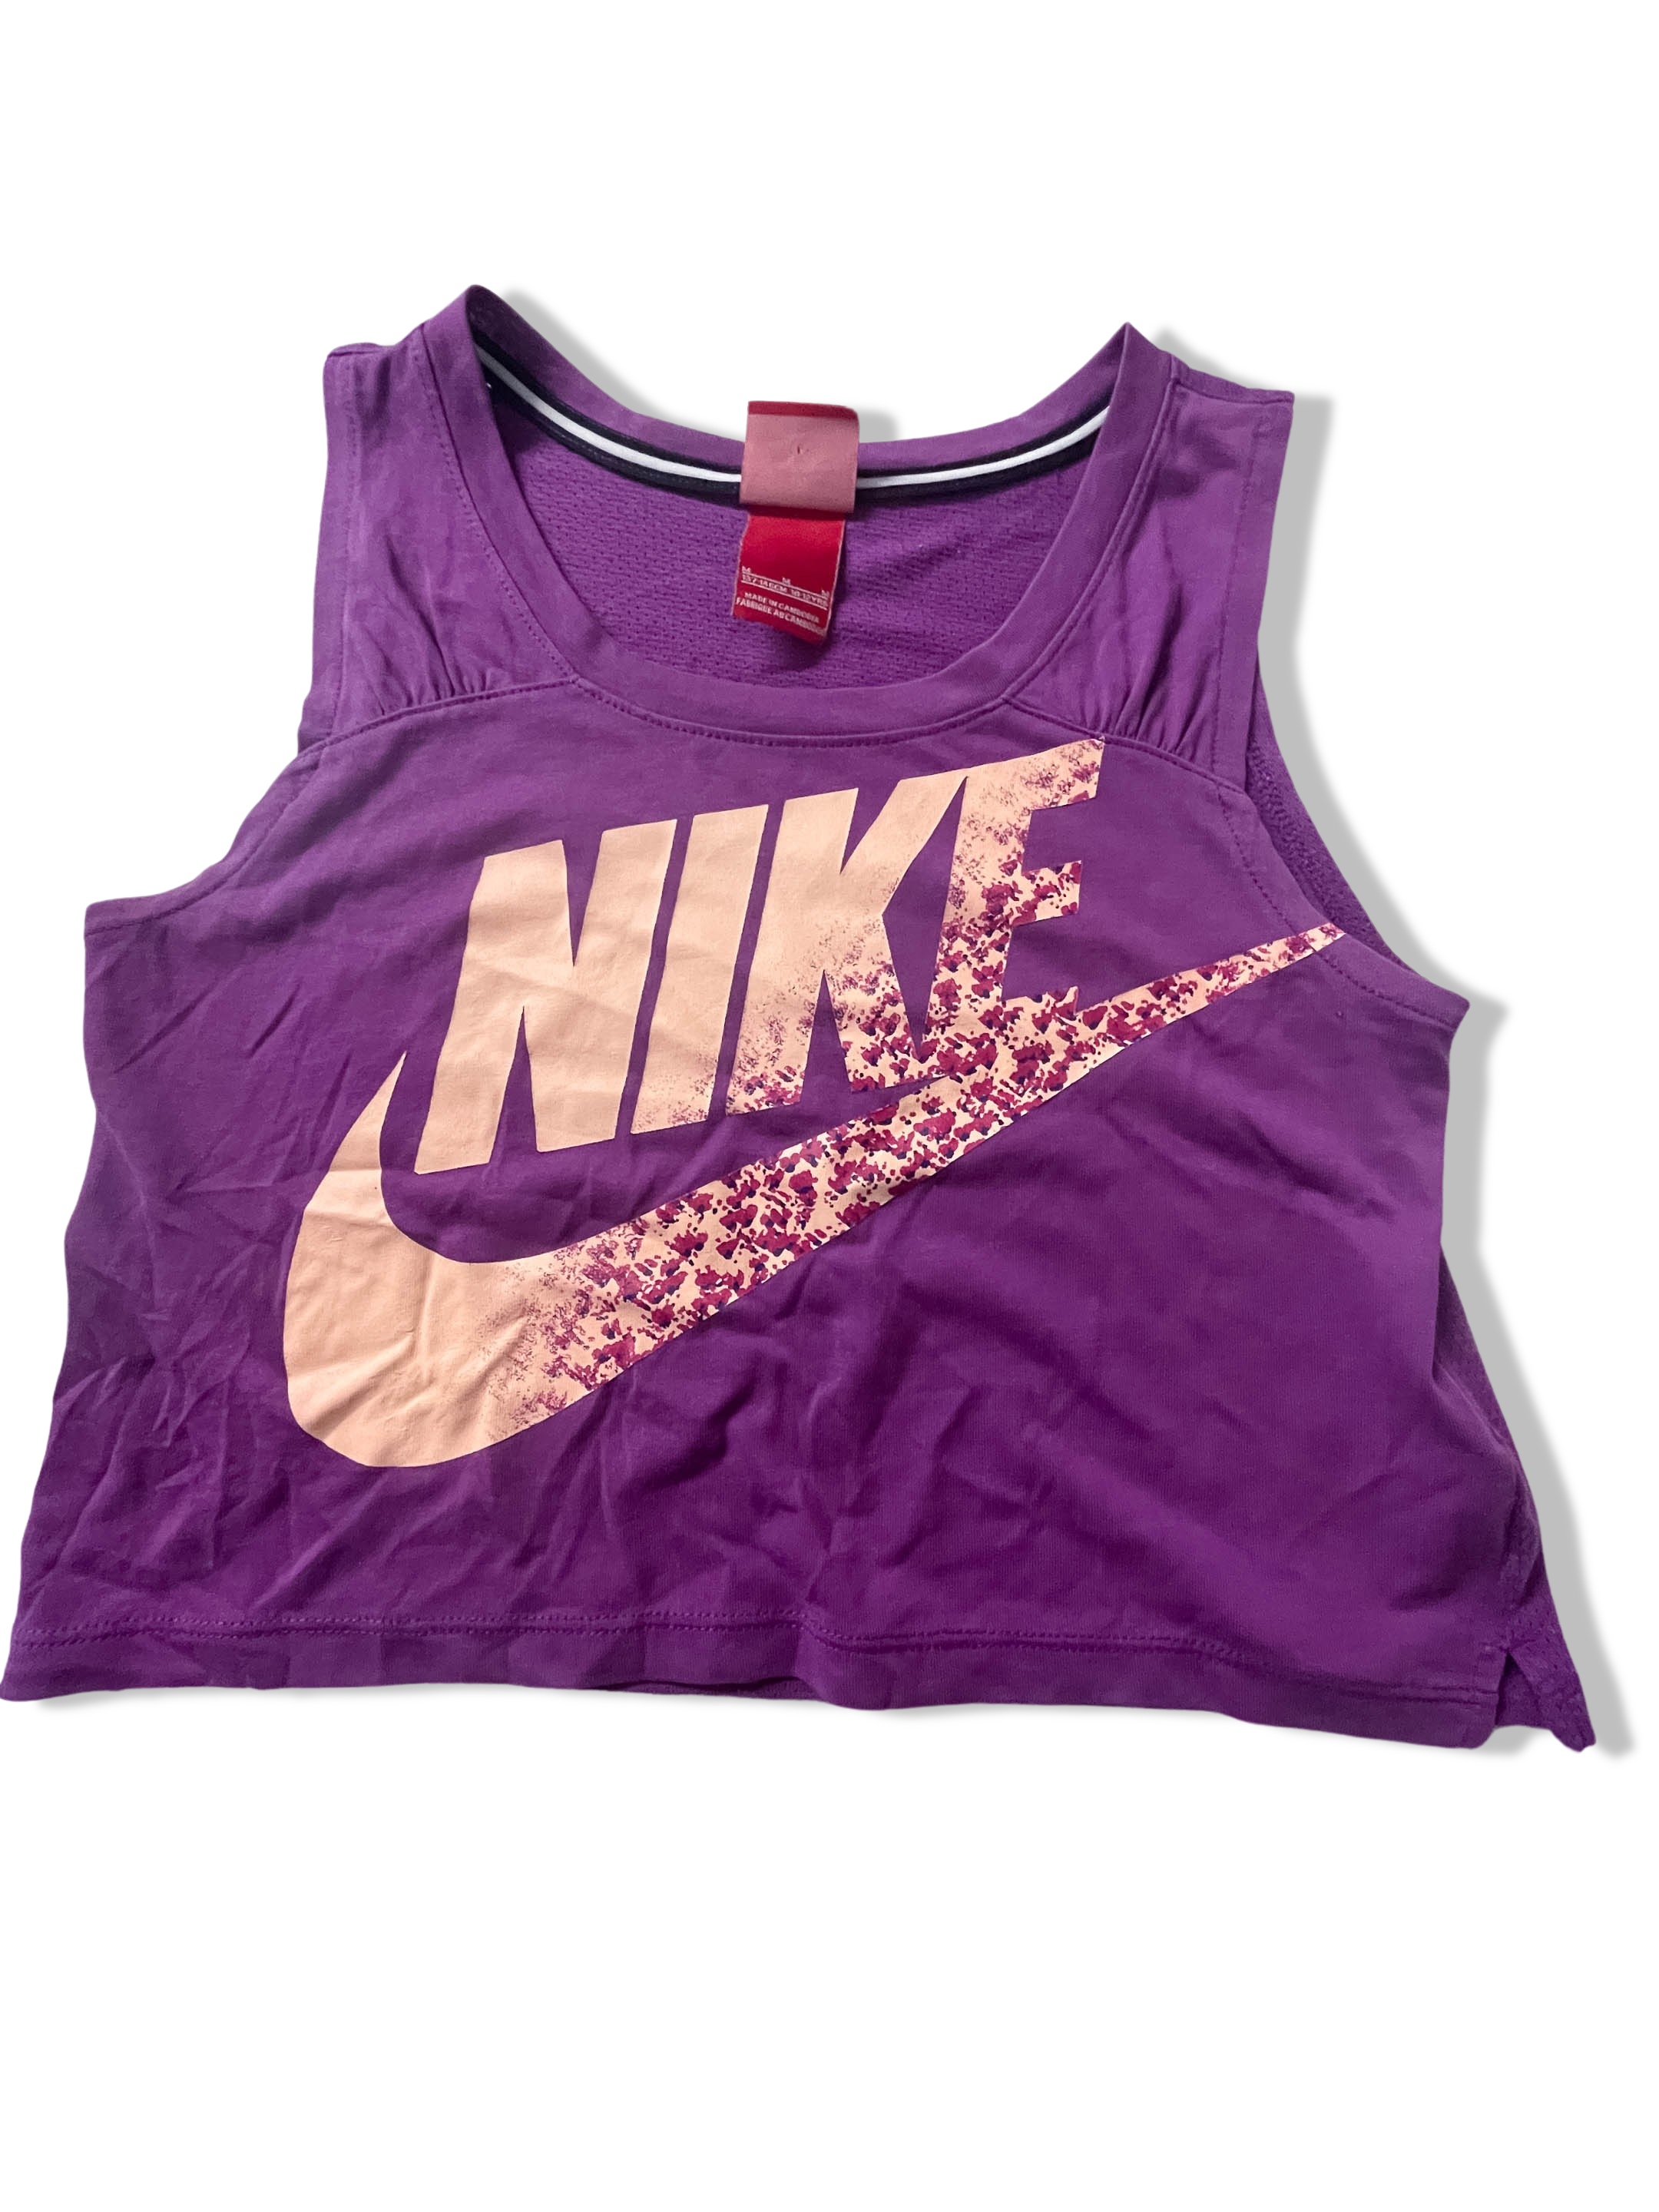 Vintage Nike womens sport wear purple cropped top